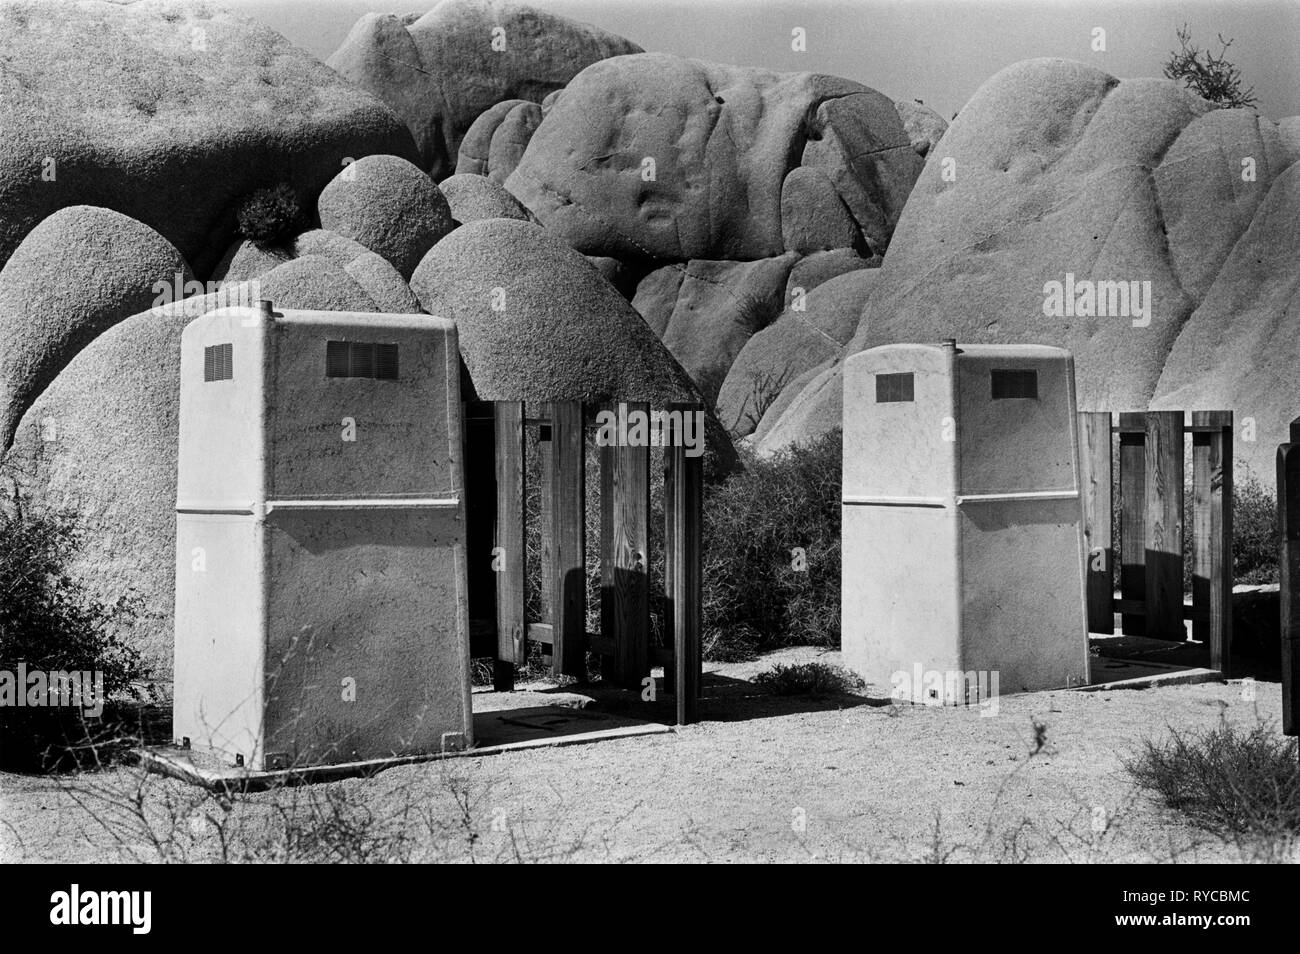 Joshua Tree National Park deux cabines de toilettes publiques 1969, États-Unis 1960s US HOMER SYKES Banque D'Images